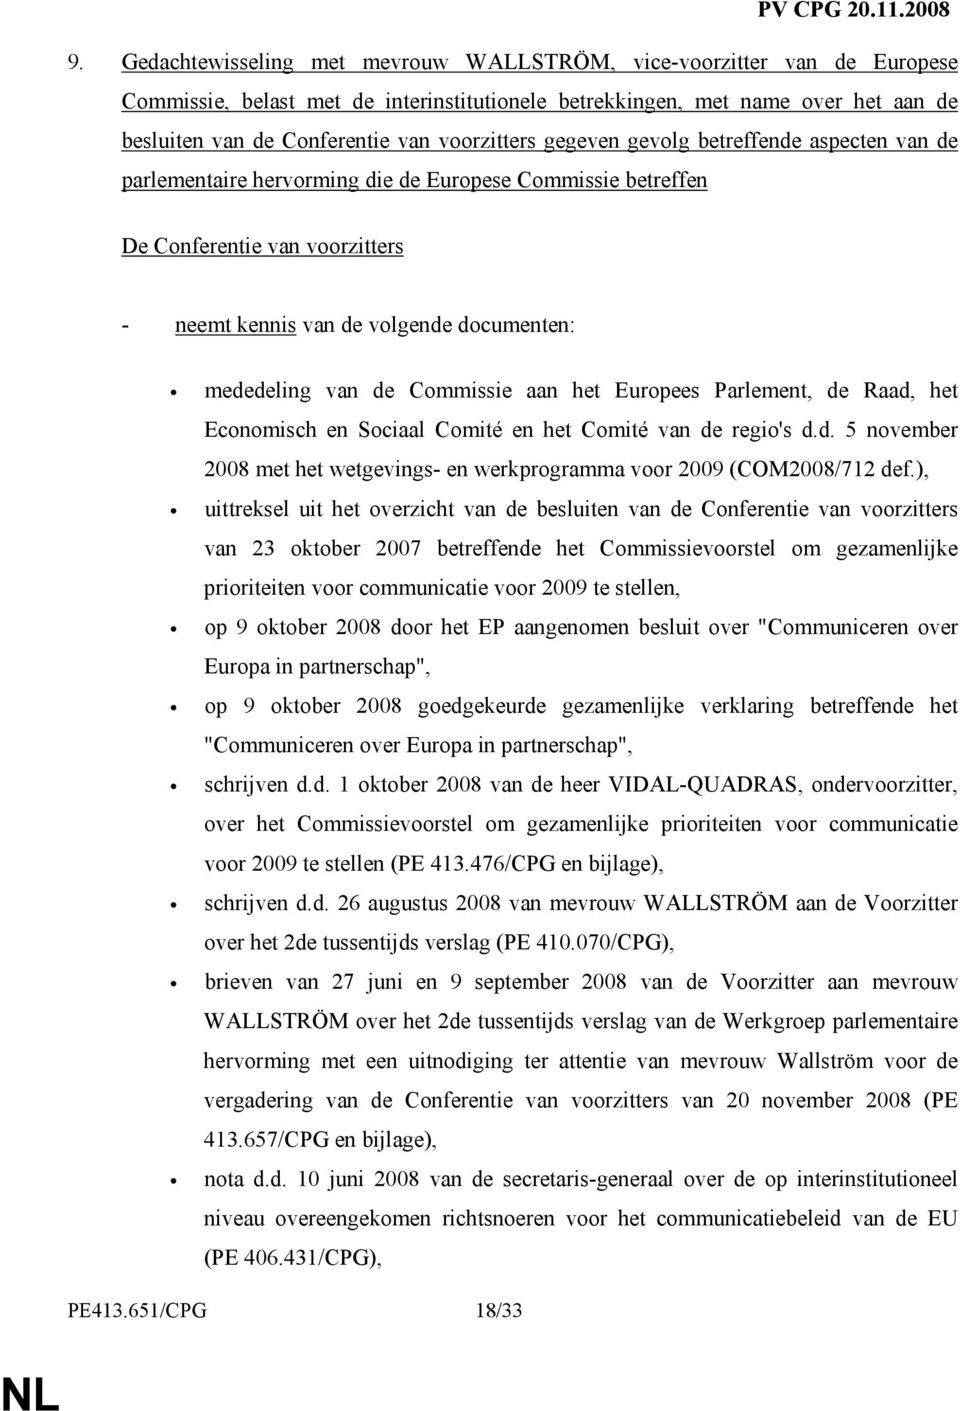 mededeling van de Commissie aan het Europees Parlement, de Raad, het Economisch en Sociaal Comité en het Comité van de regio's d.d. 5 november 2008 met het wetgevings- en werkprogramma voor 2009 (COM2008/712 def.